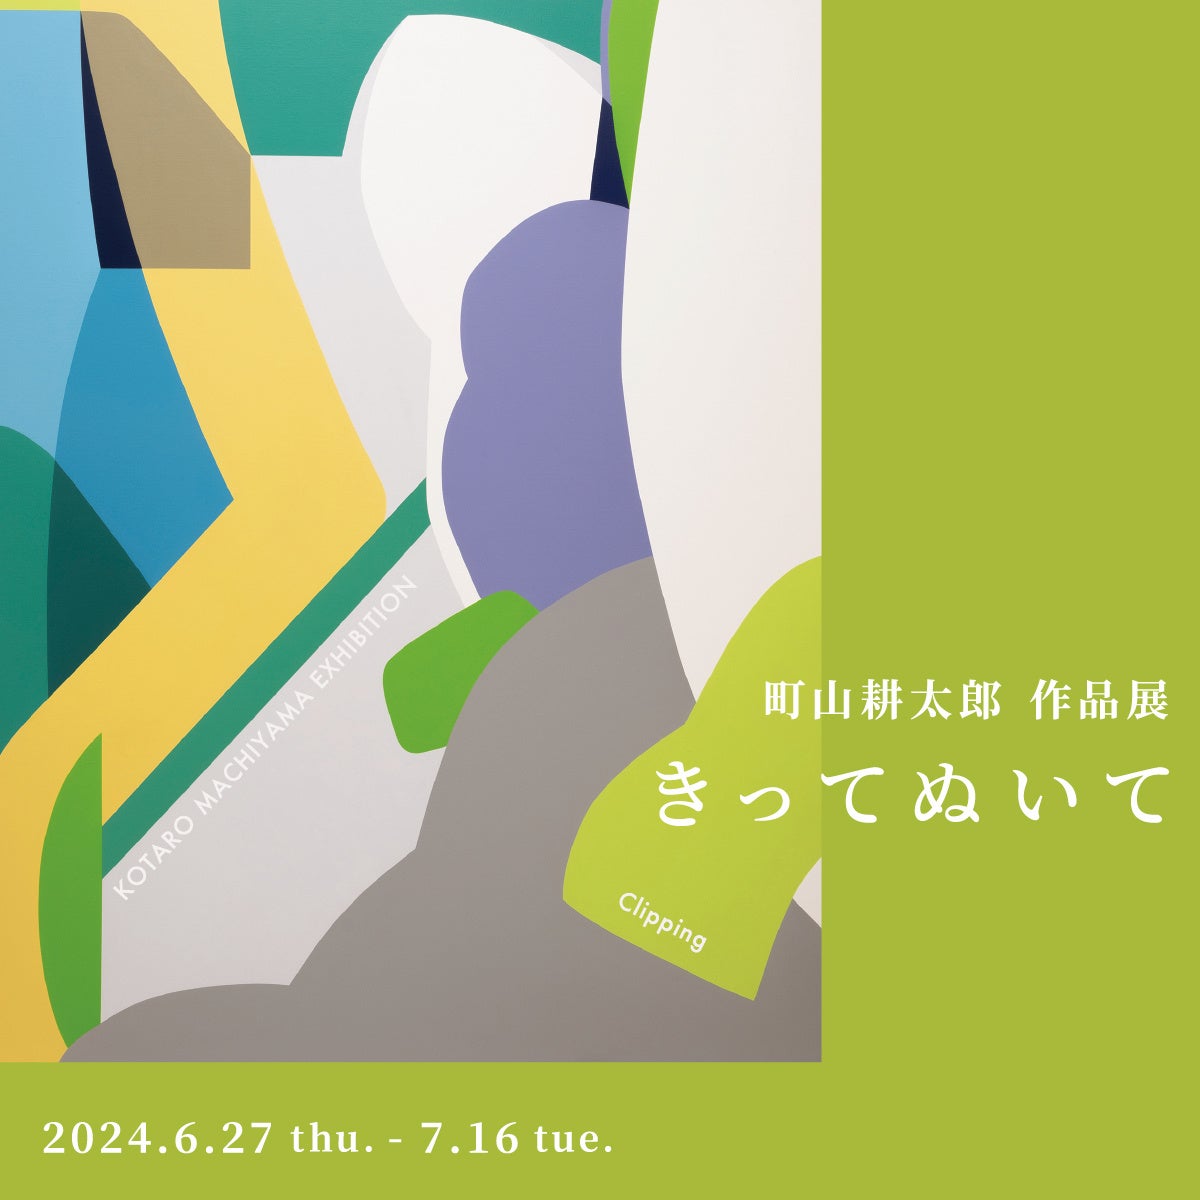 【アルフレックス大阪】町山耕太郎 作品展「きってぬいて」を開催